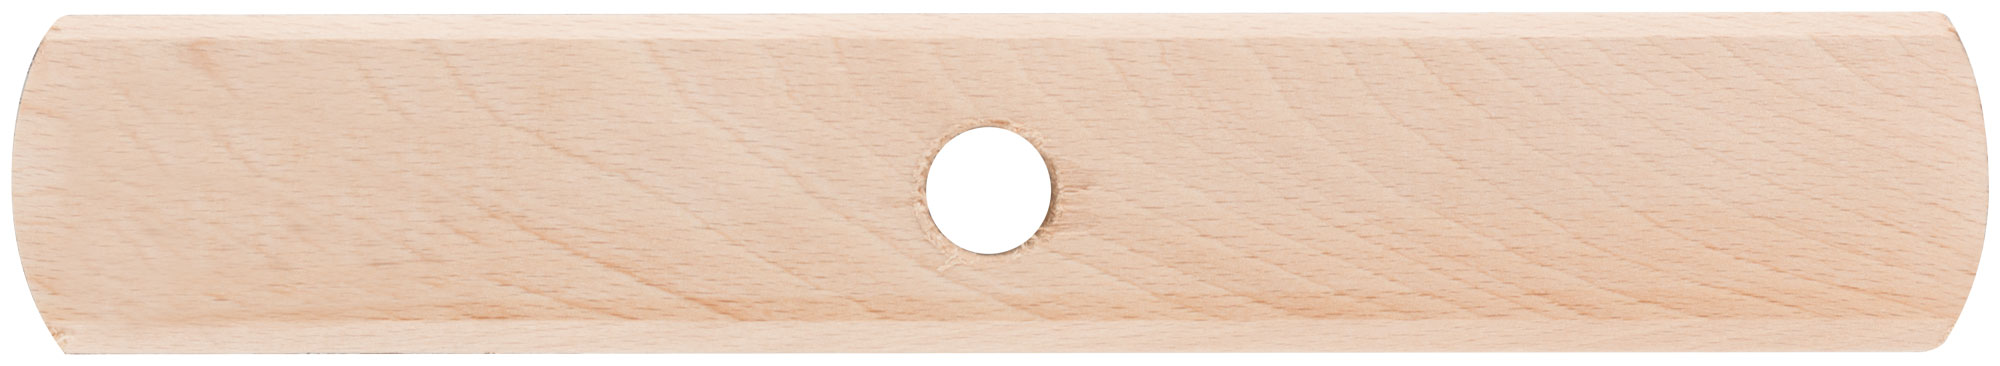 Щетка для пола деревянная, овальная, 5-ти рядная, 250 мм